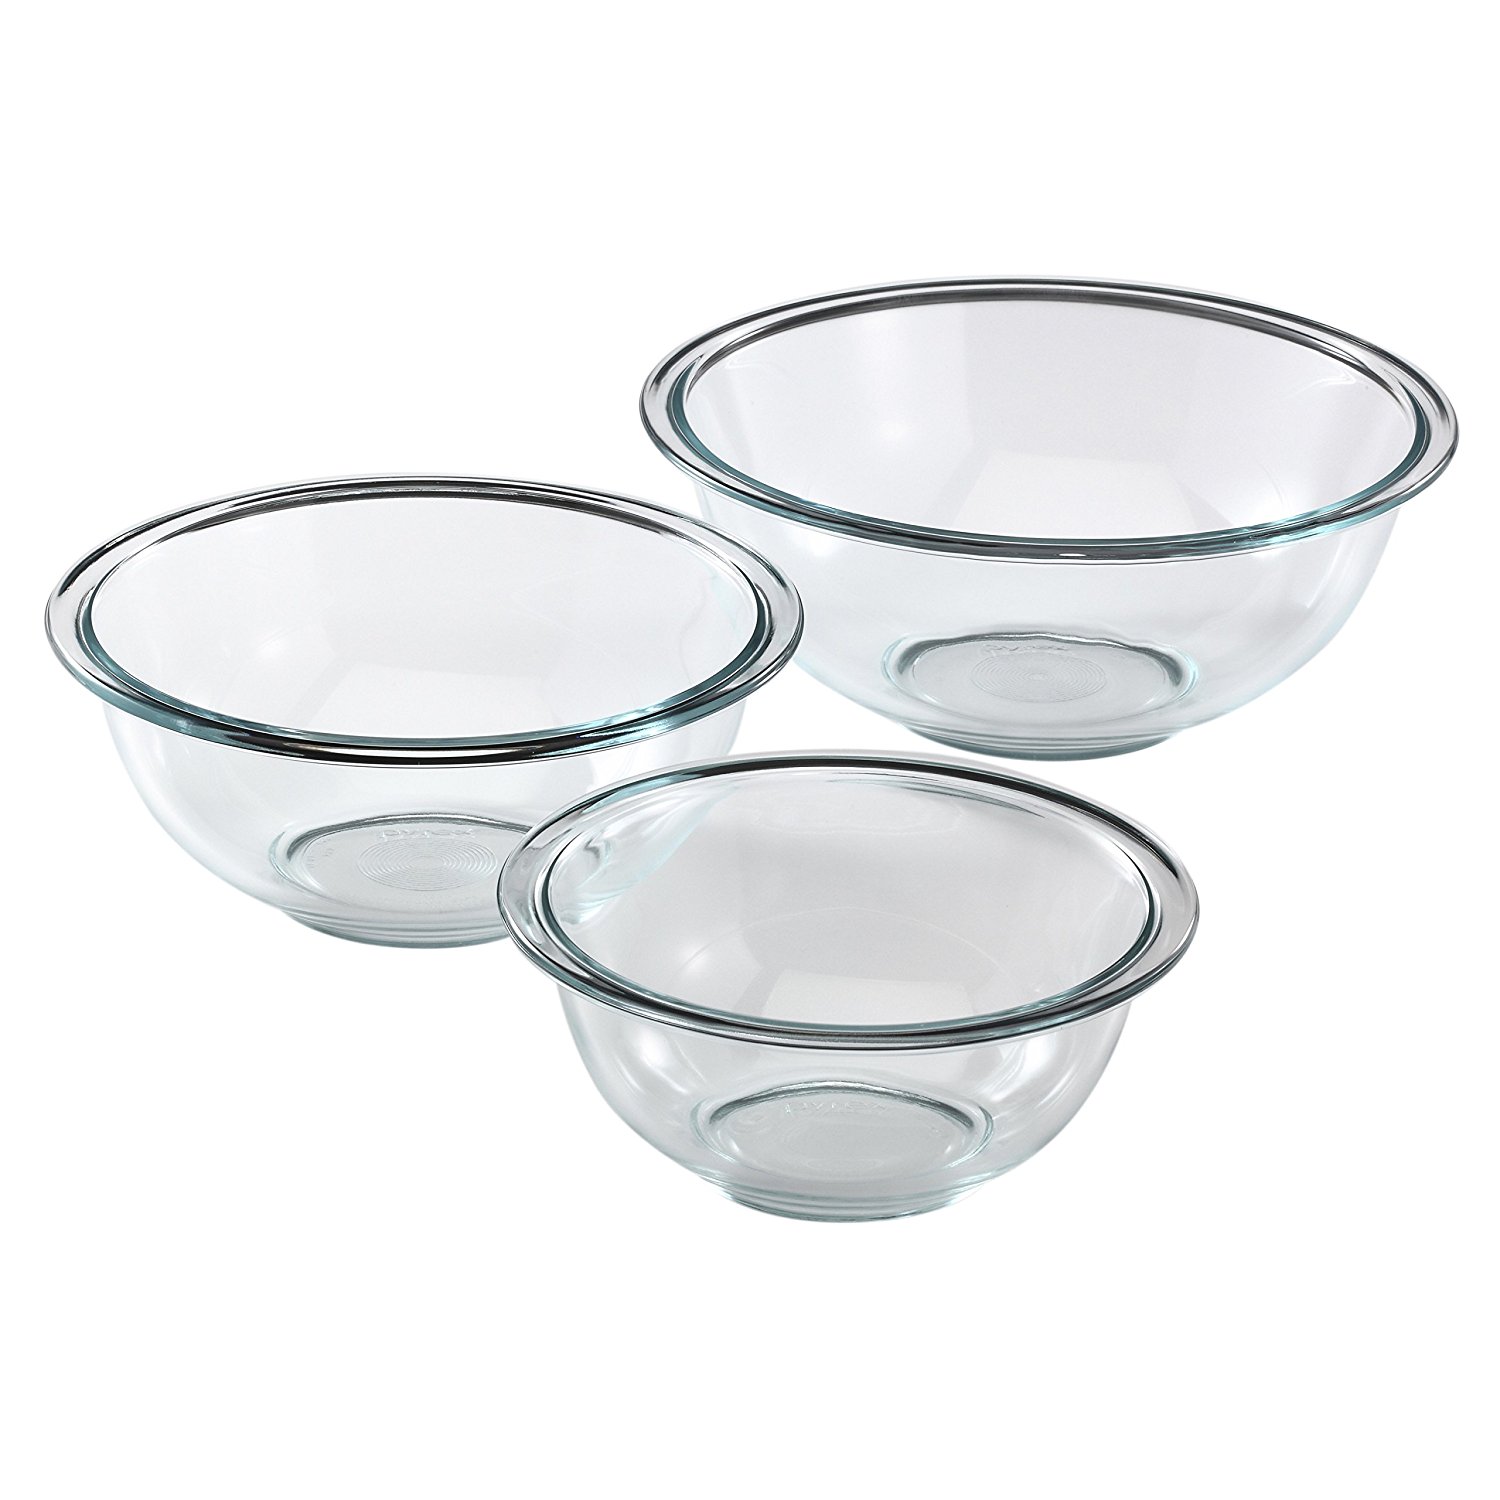 Pyrex Prepware 3-Piece Glass Mixing Bowl Set – Just $11.12!